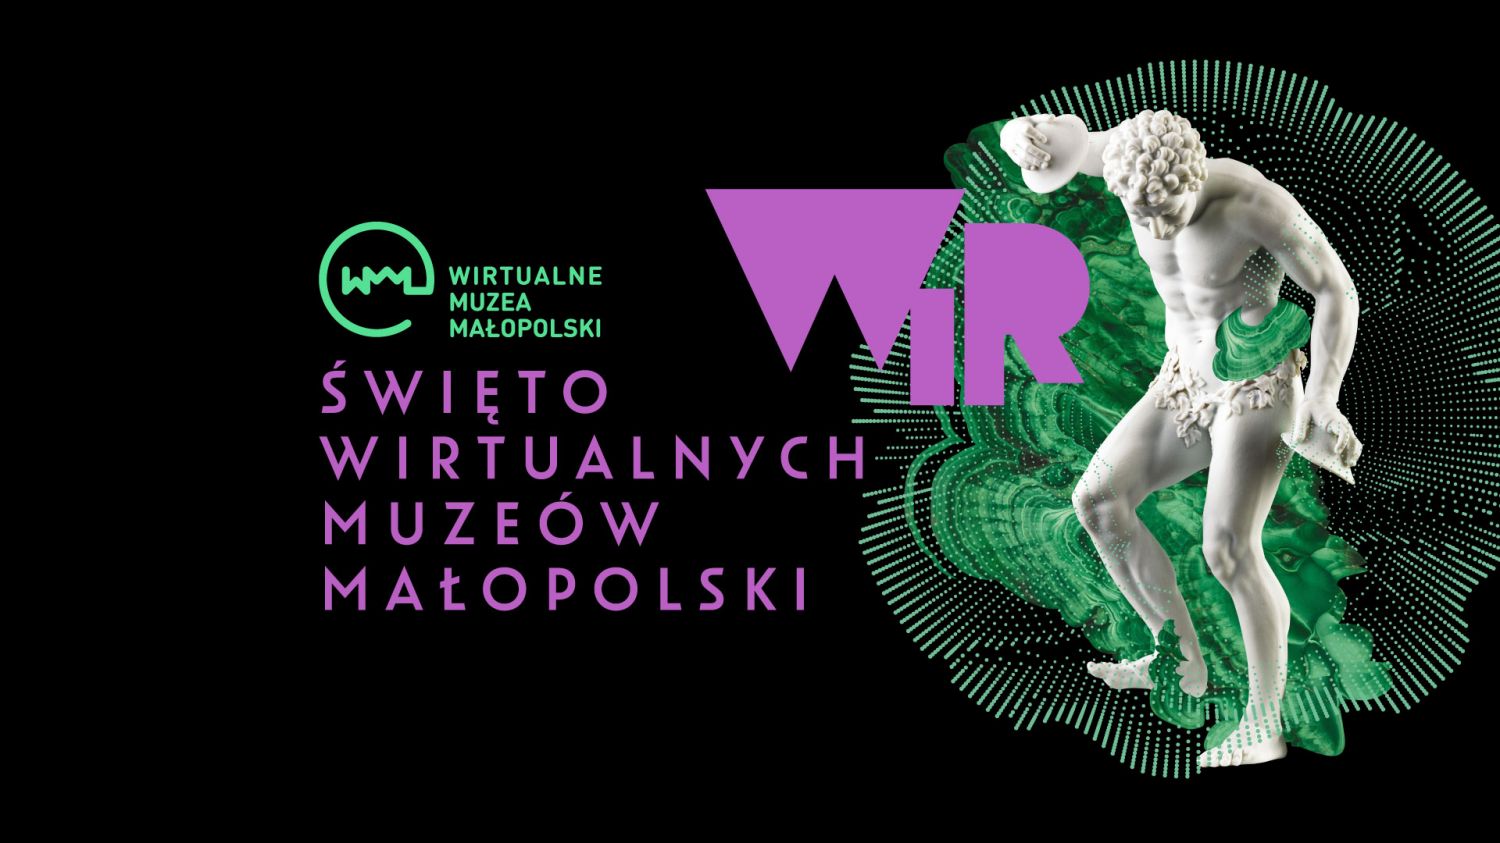 WIR Święto Wirtualnych Muzeów Małopolski